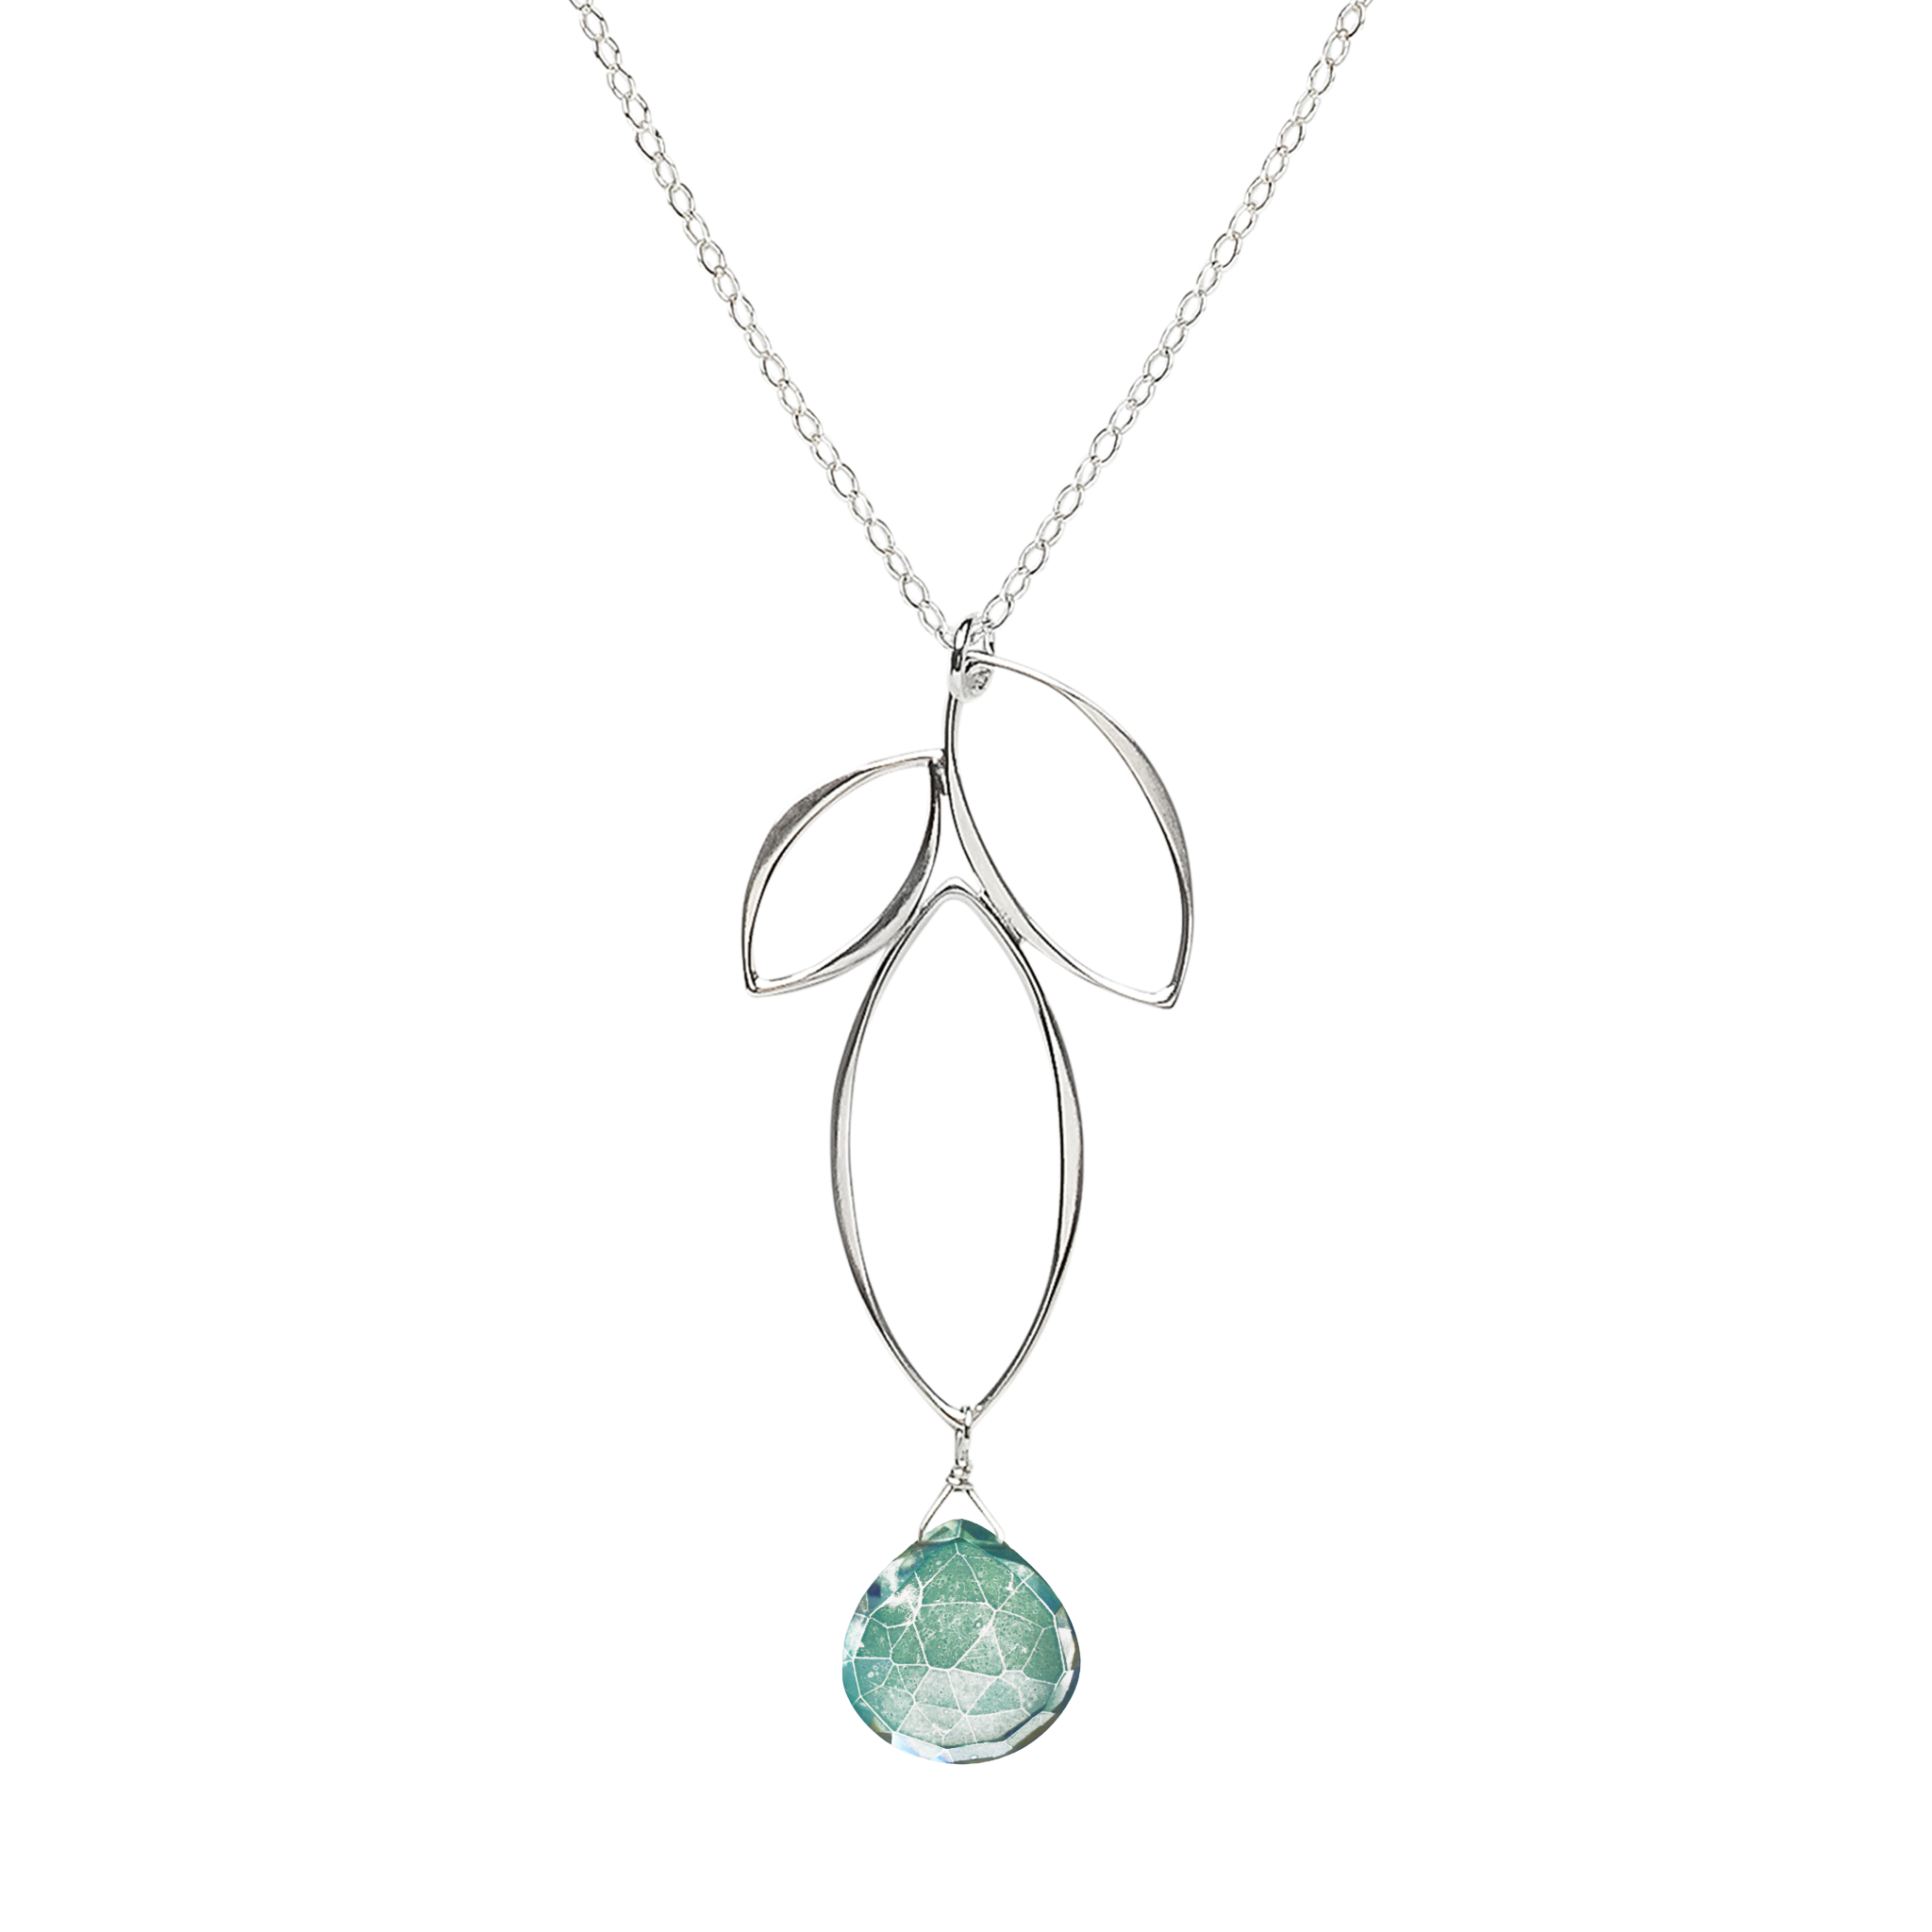 Ella Silver Small Fuchsia Necklace with Gemstone